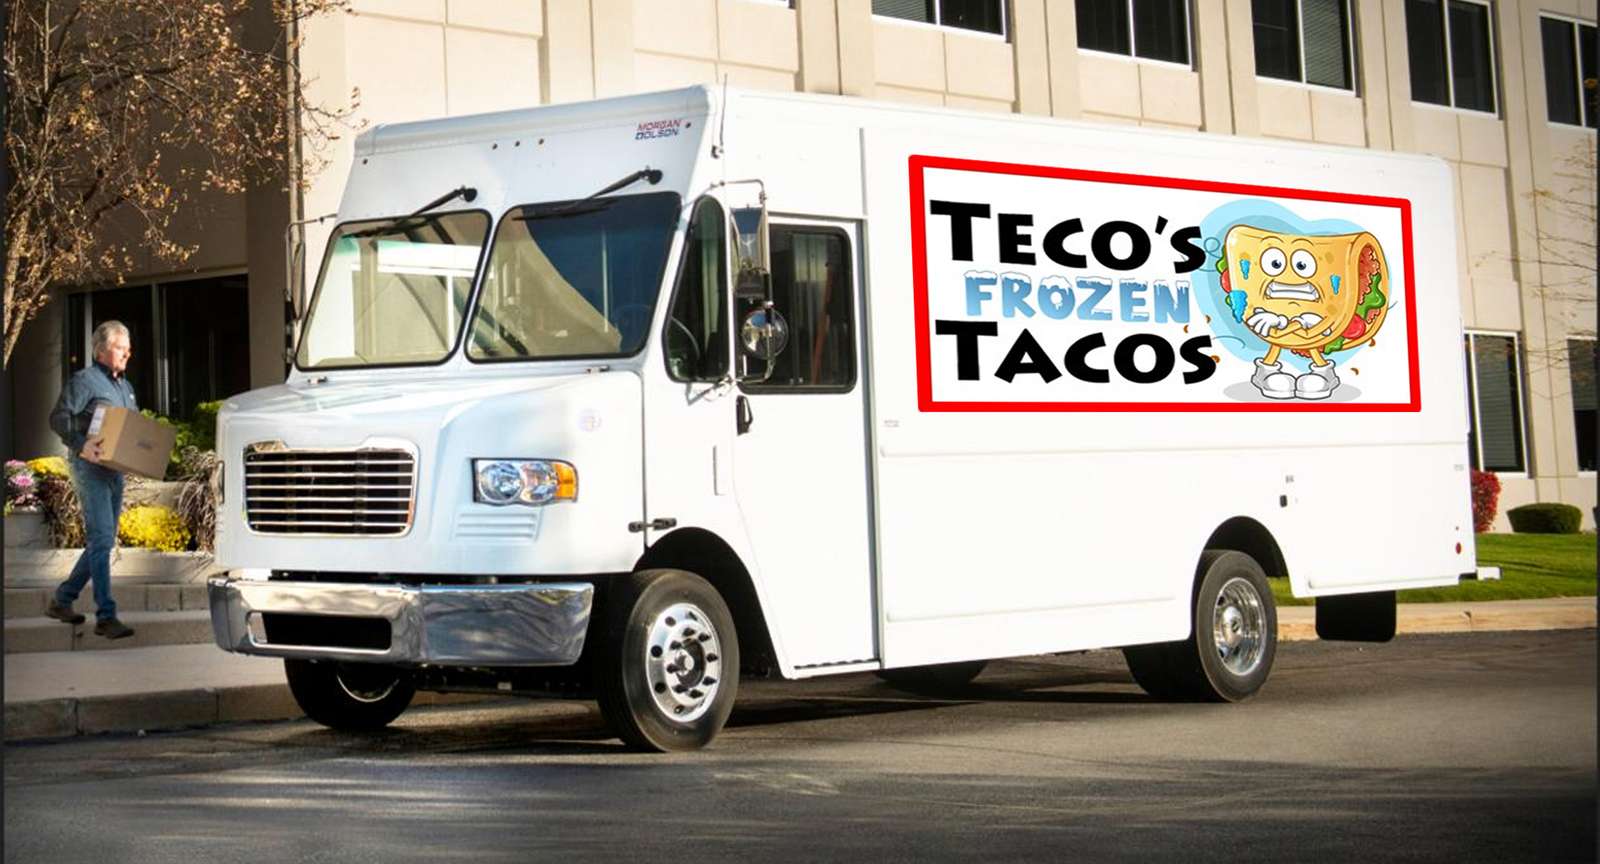 Il camion dei tacos di Teco puzzle online da foto